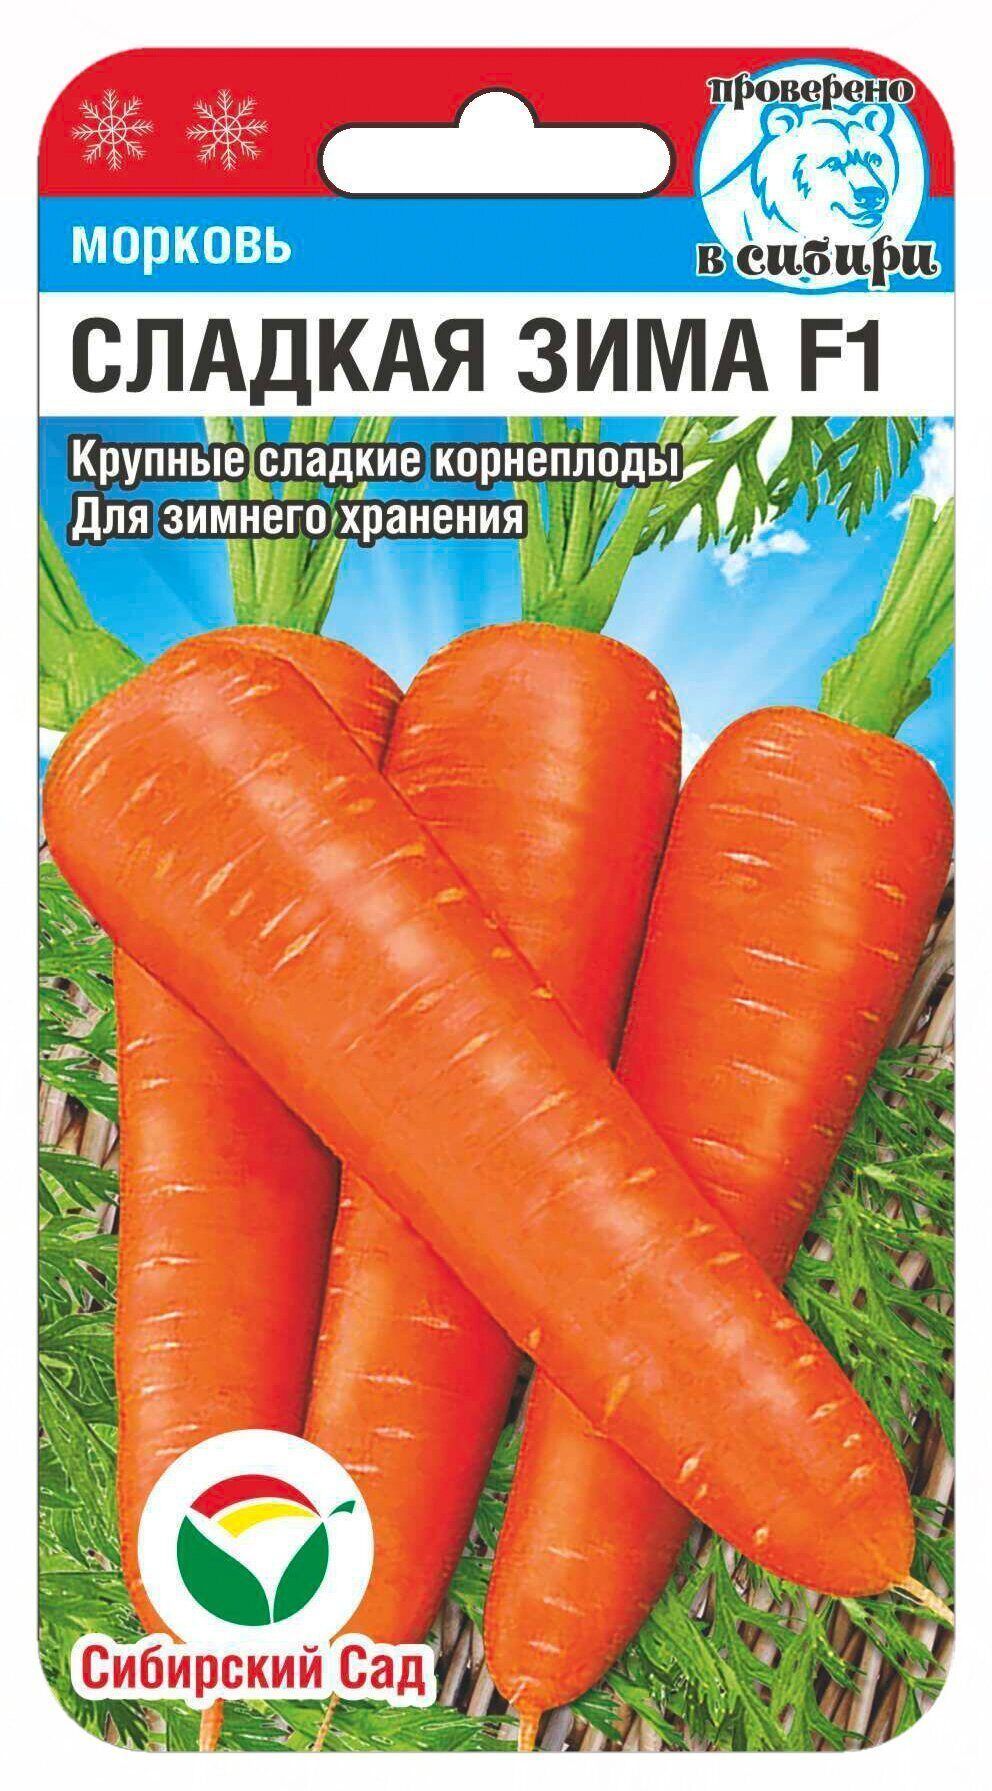 Морковь Сладкая зима F1, семена